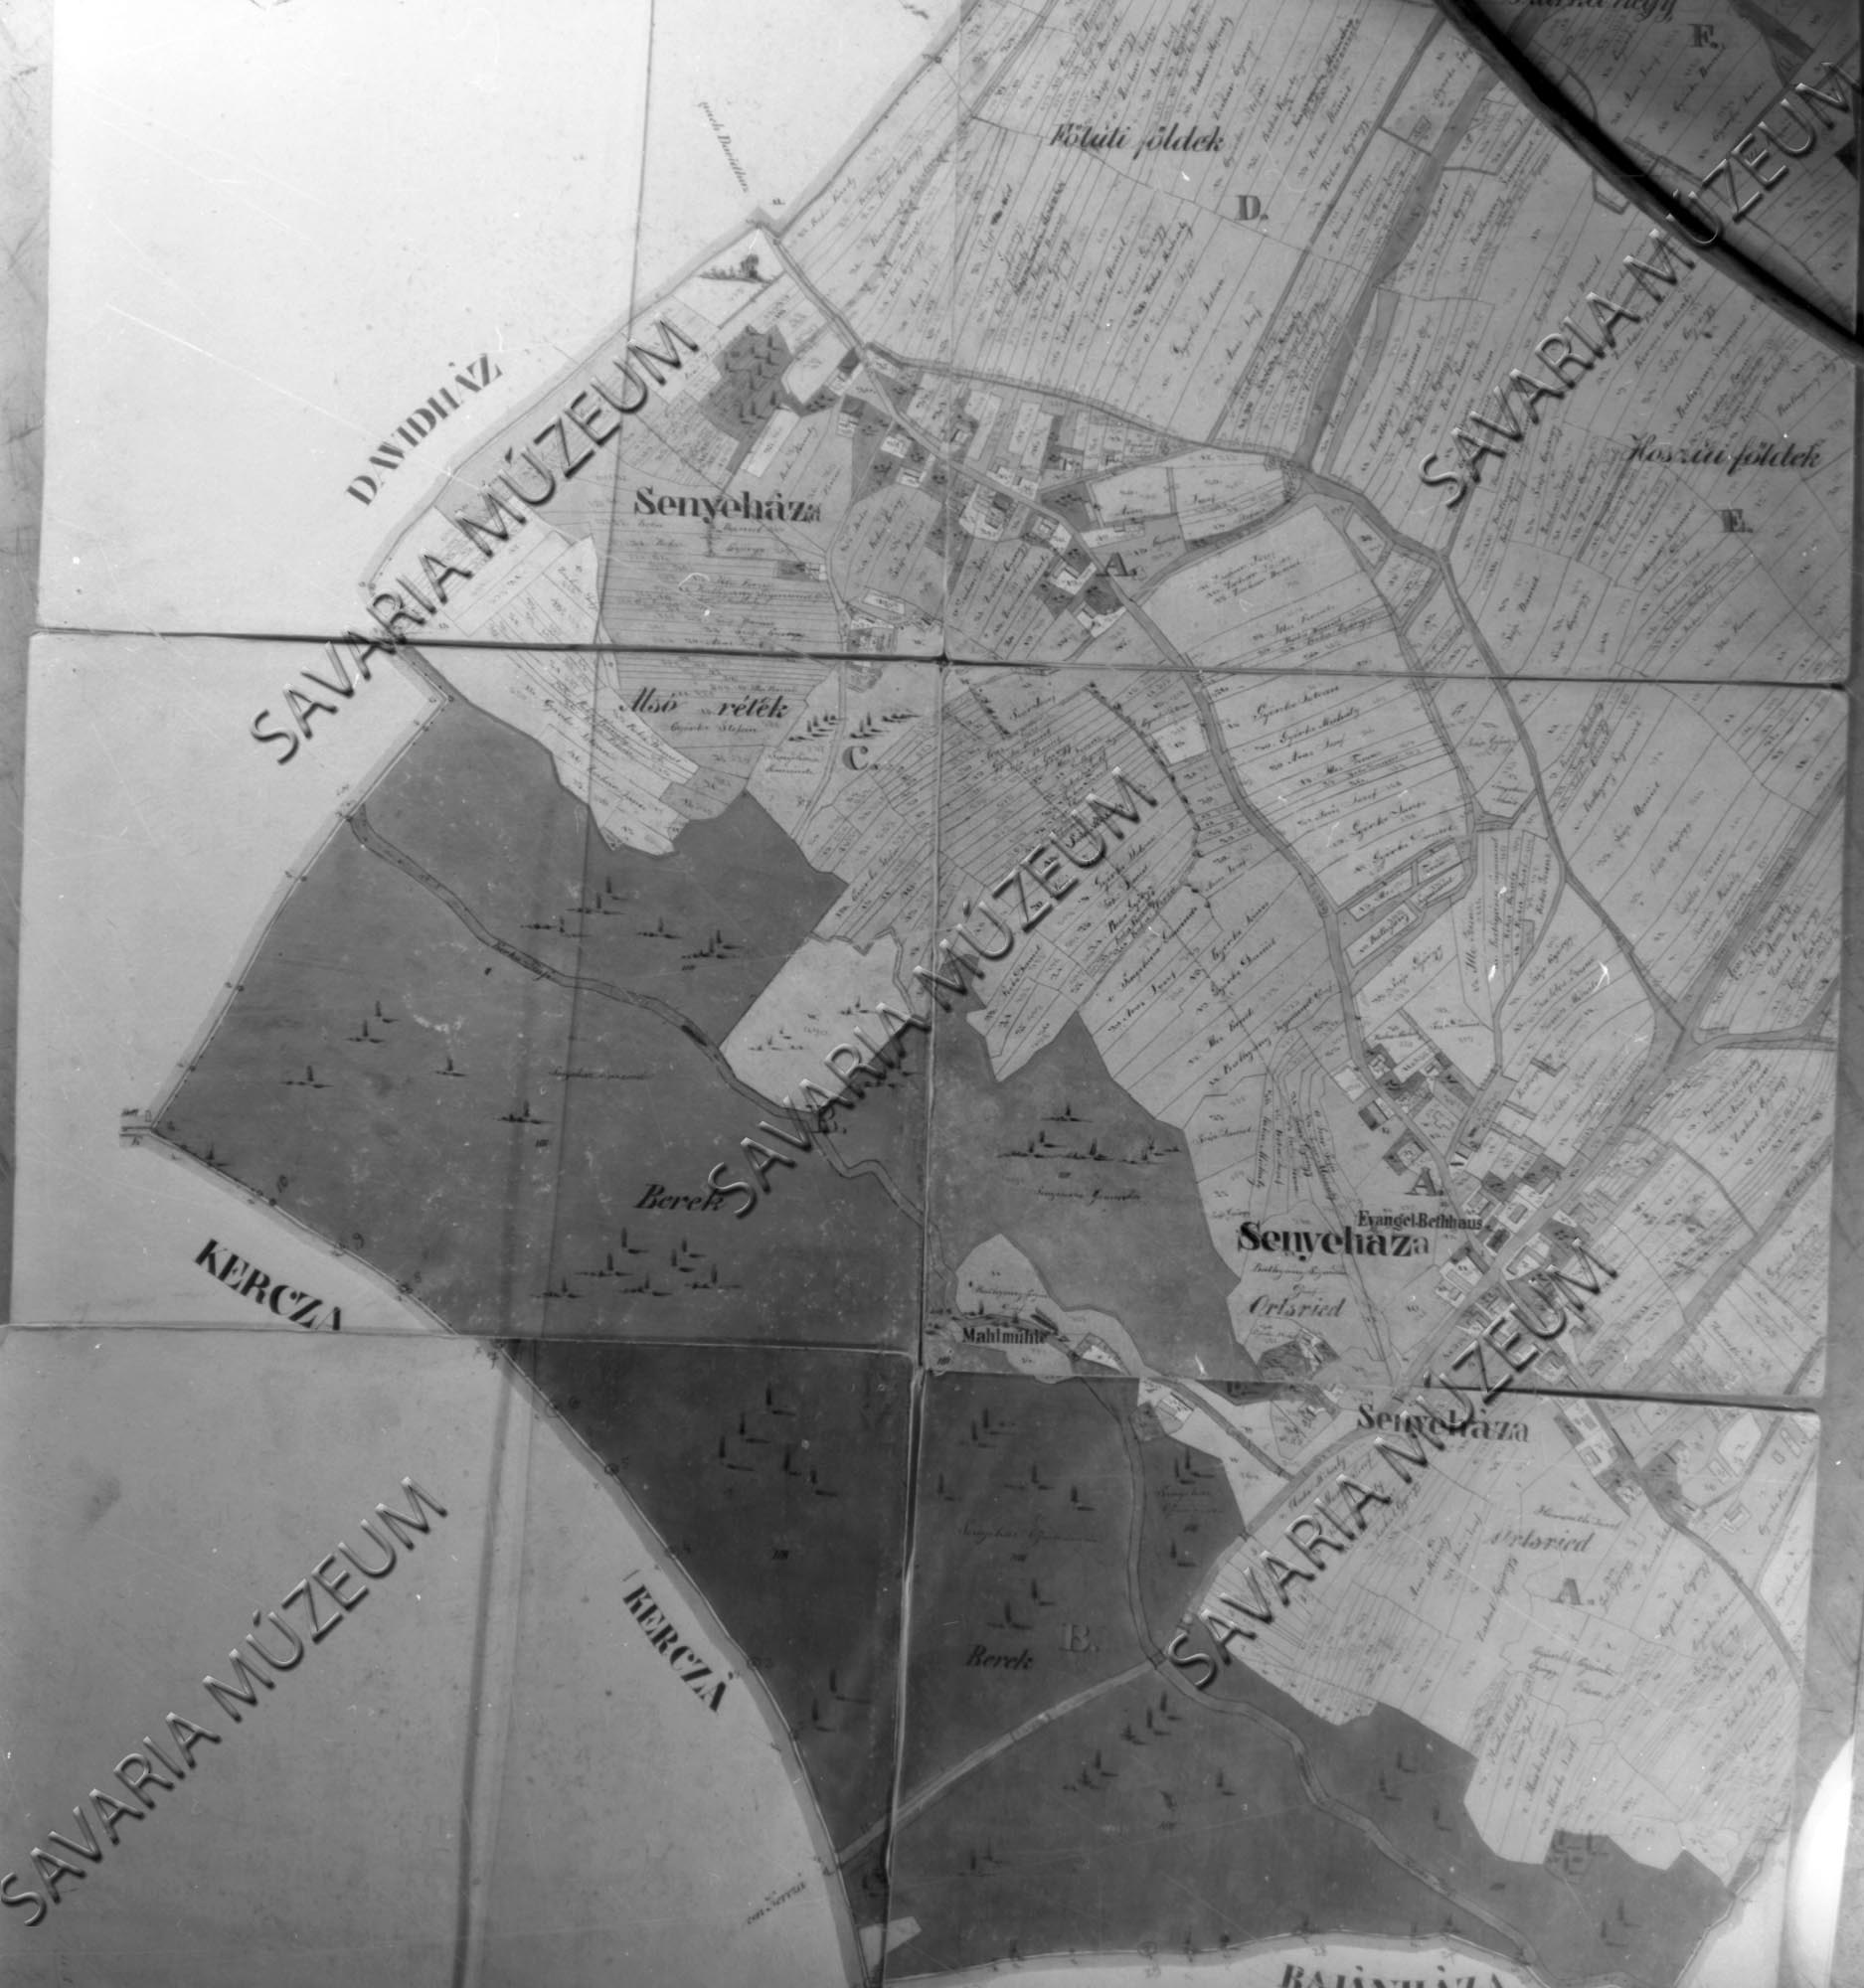 Senyeháza kataszteri térképe (Savaria Megyei Hatókörű Városi Múzeum, Szombathely CC BY-NC-SA)